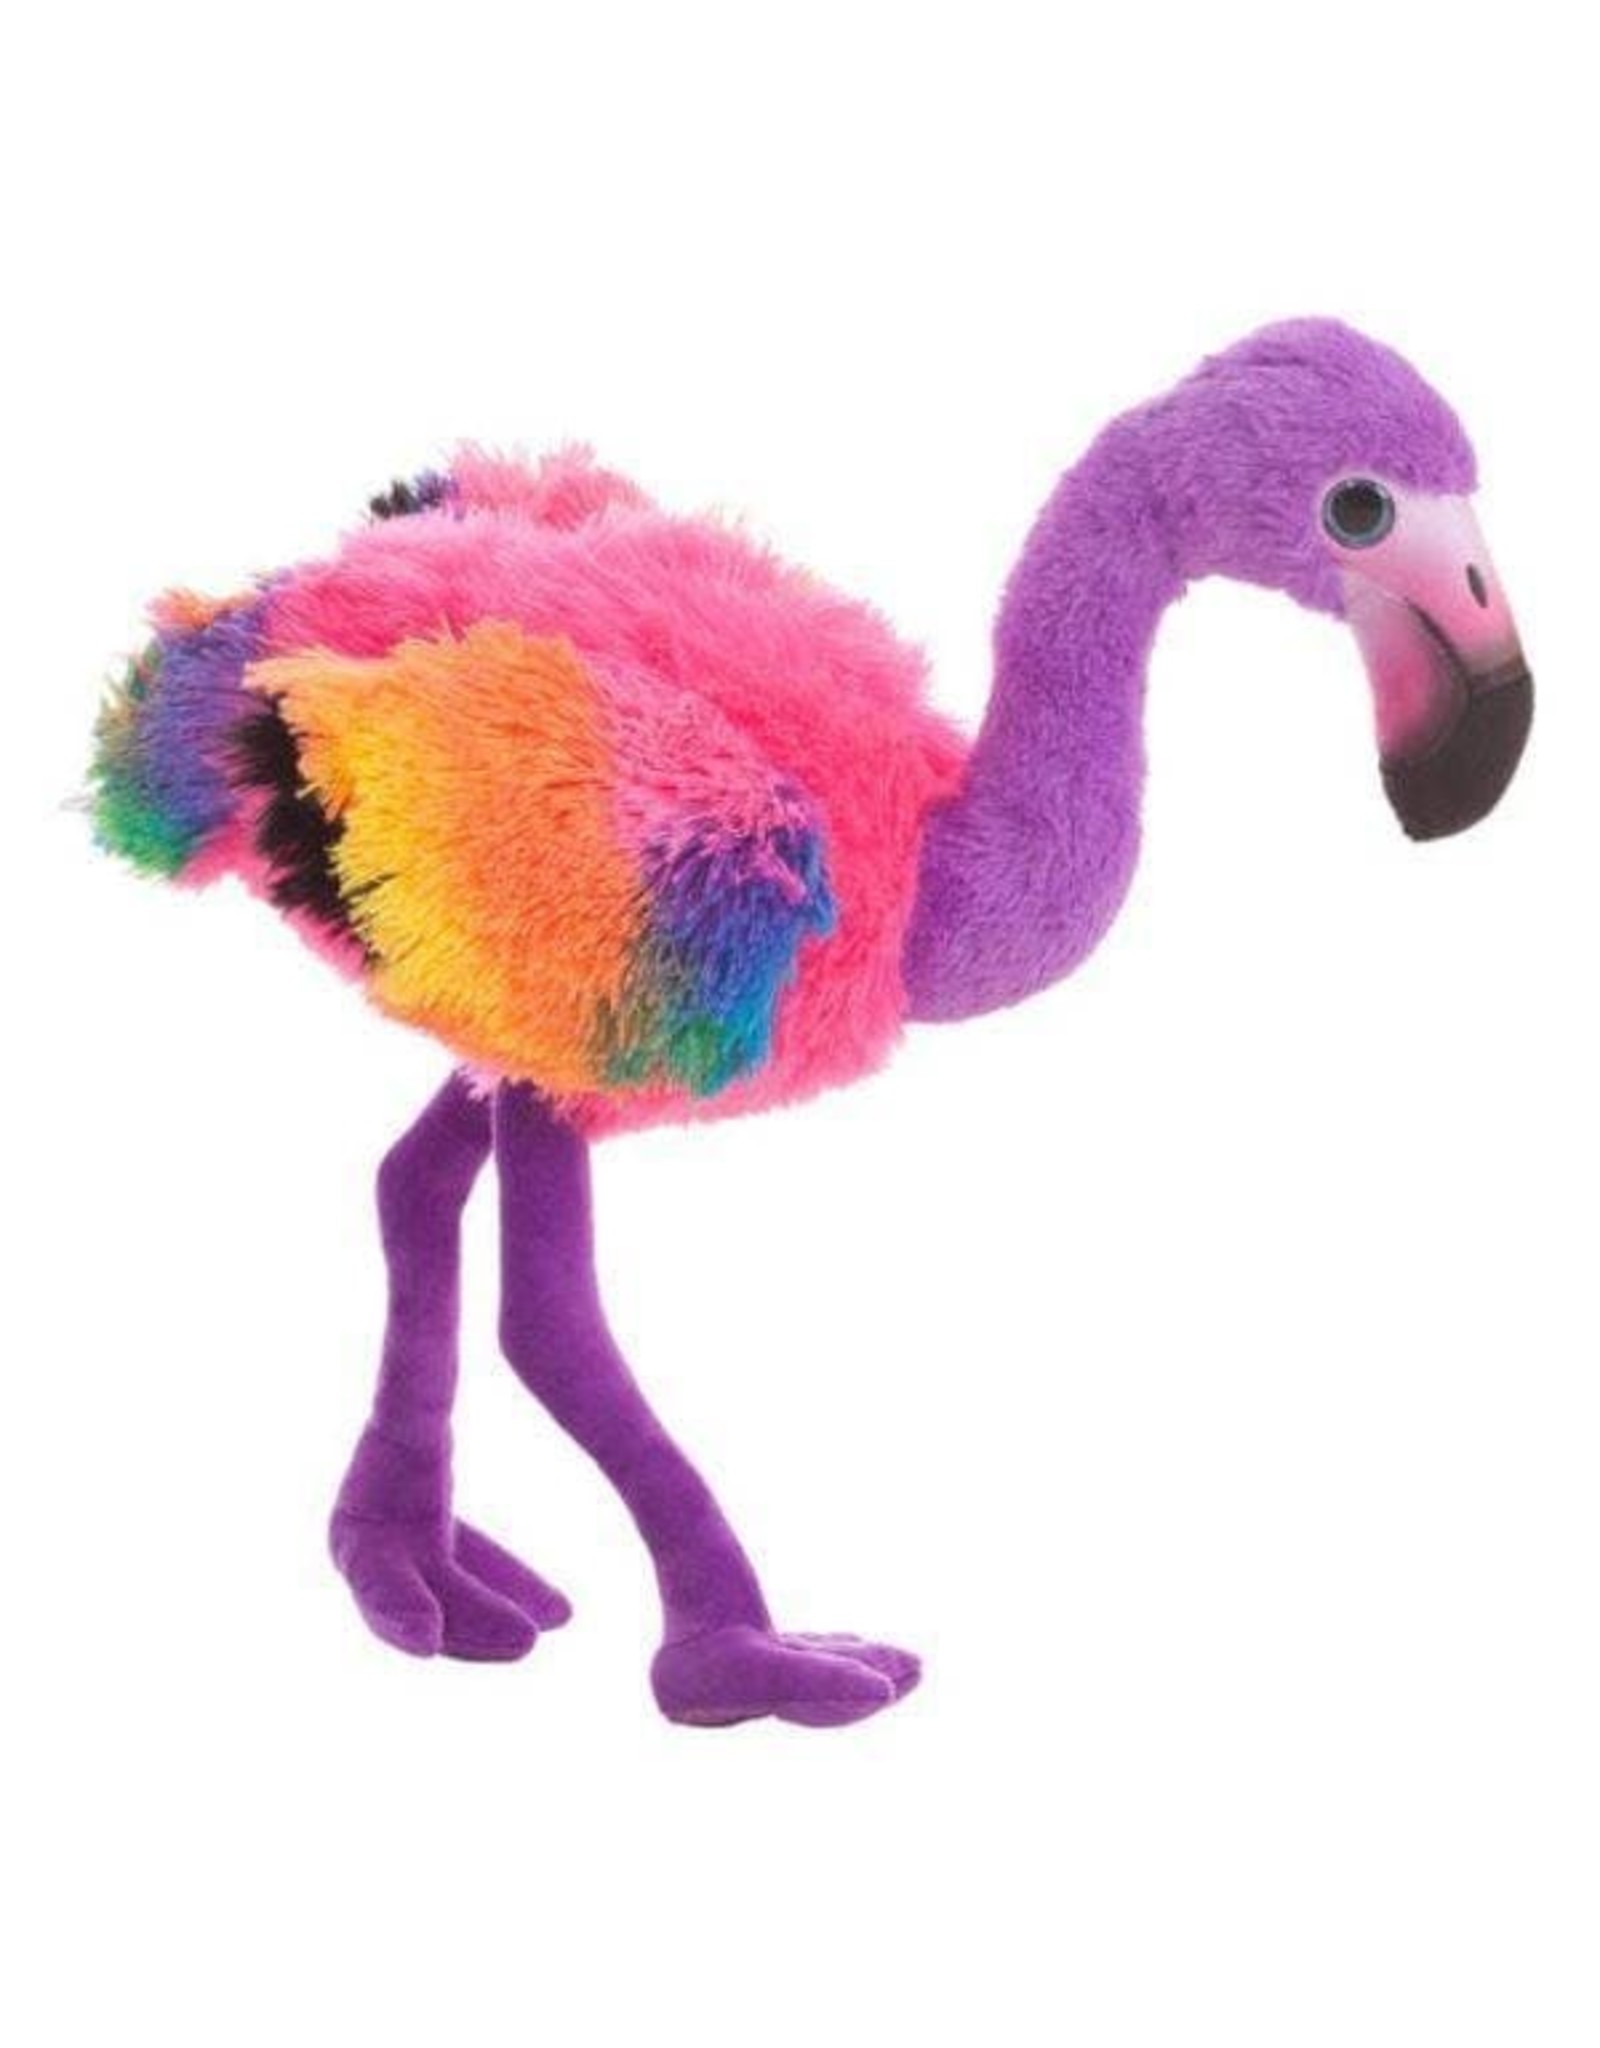 Trukado Toys - Flamingo plush Rainbow purple